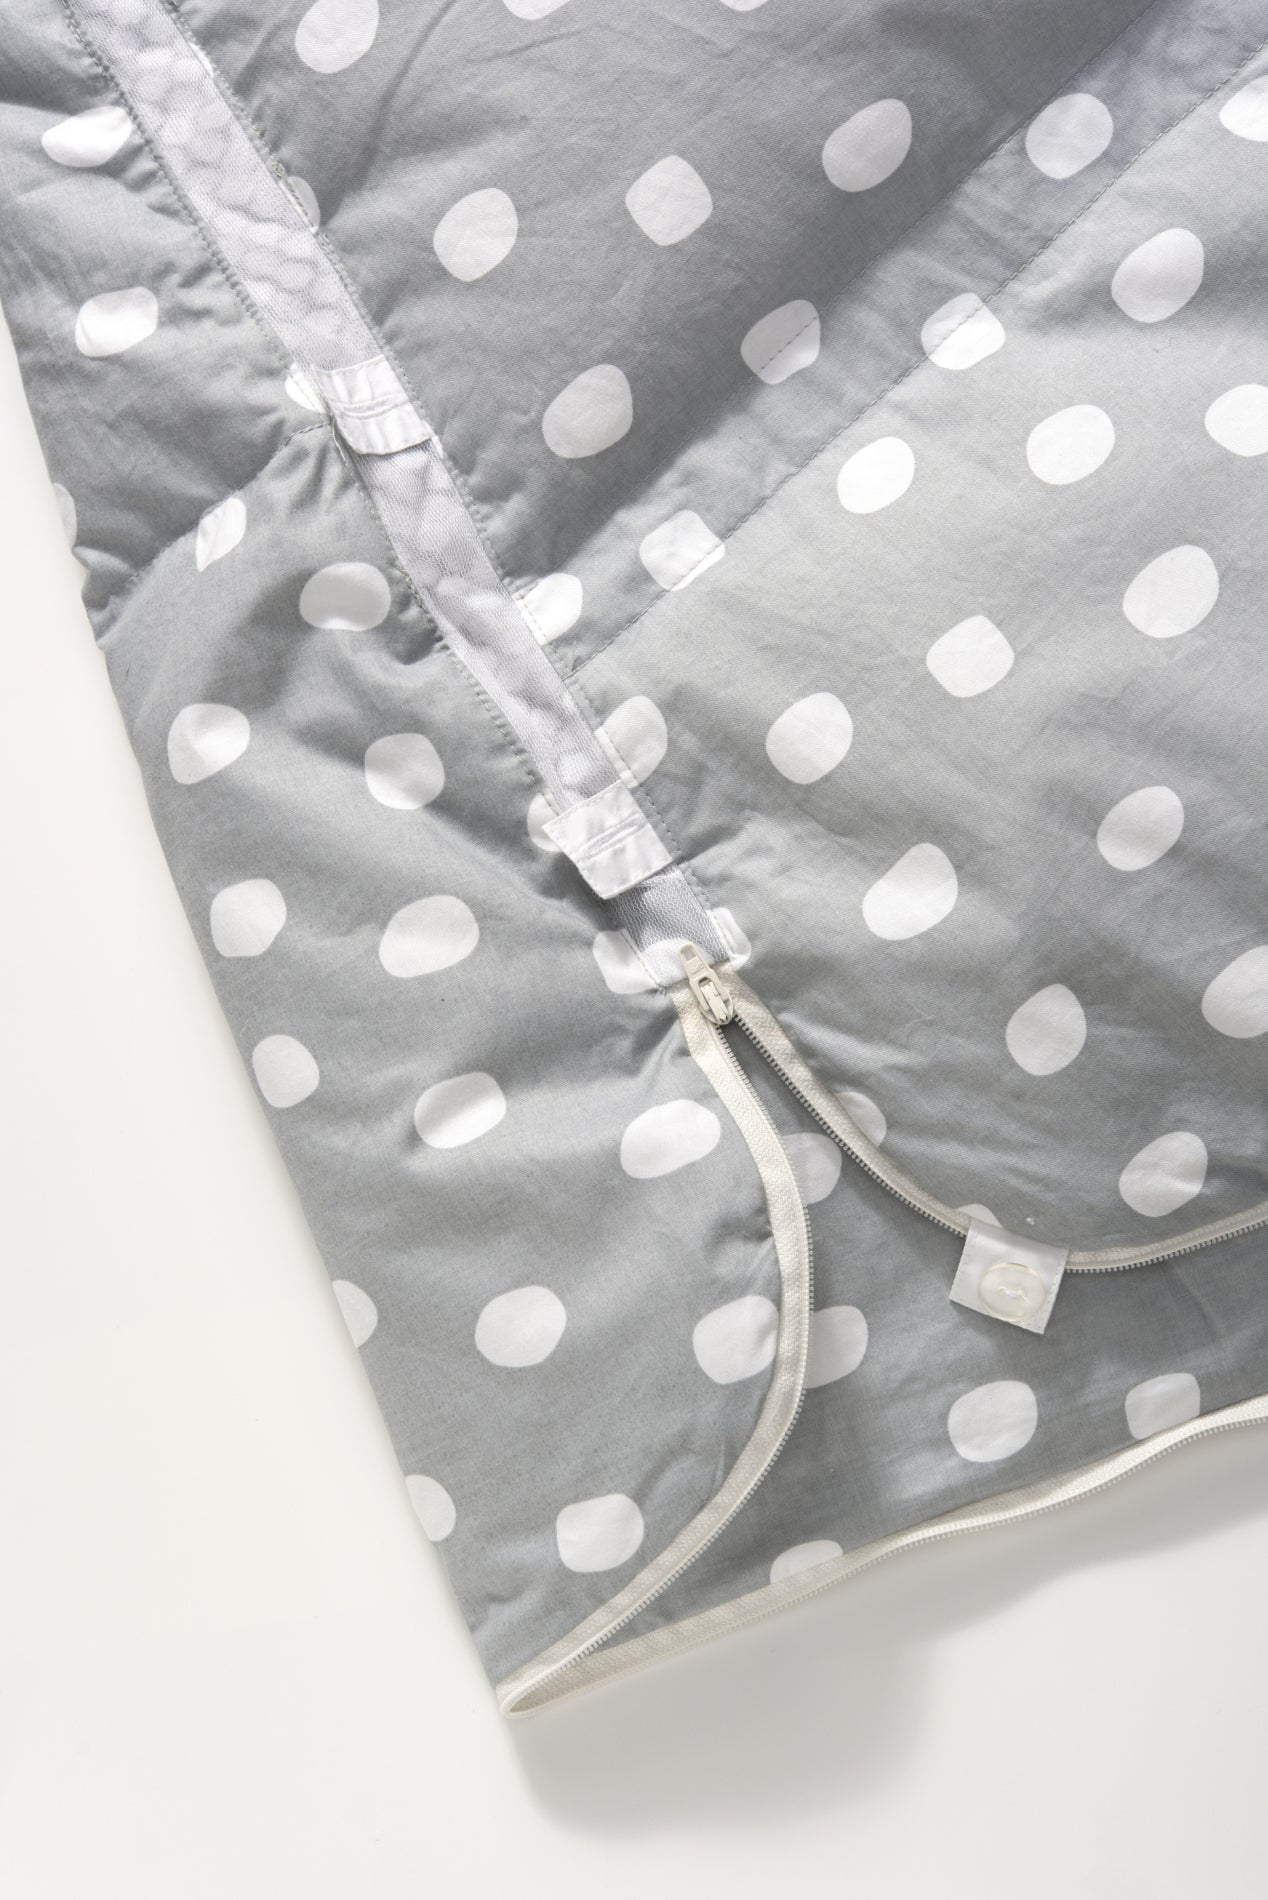 Artlaender mitwachsender Premium Daunenschlafsack in "dots grau" unise